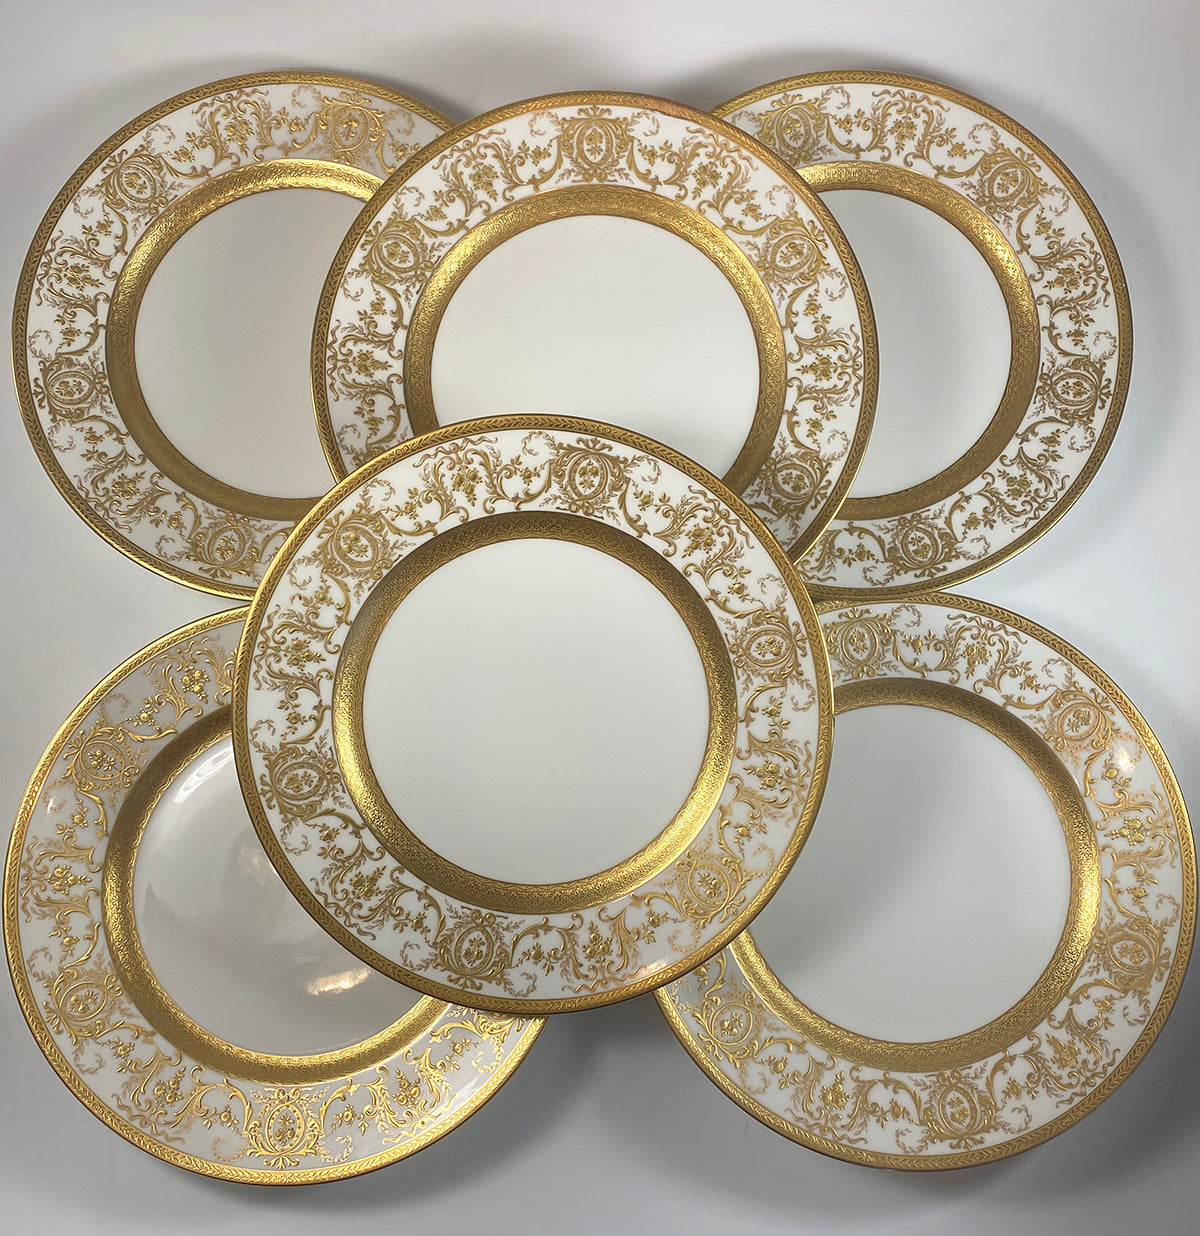 Set of 6 Opulent Antique Raised Gold Enamel 10.5" Dinner Plates, Limoges France Belle Epoch